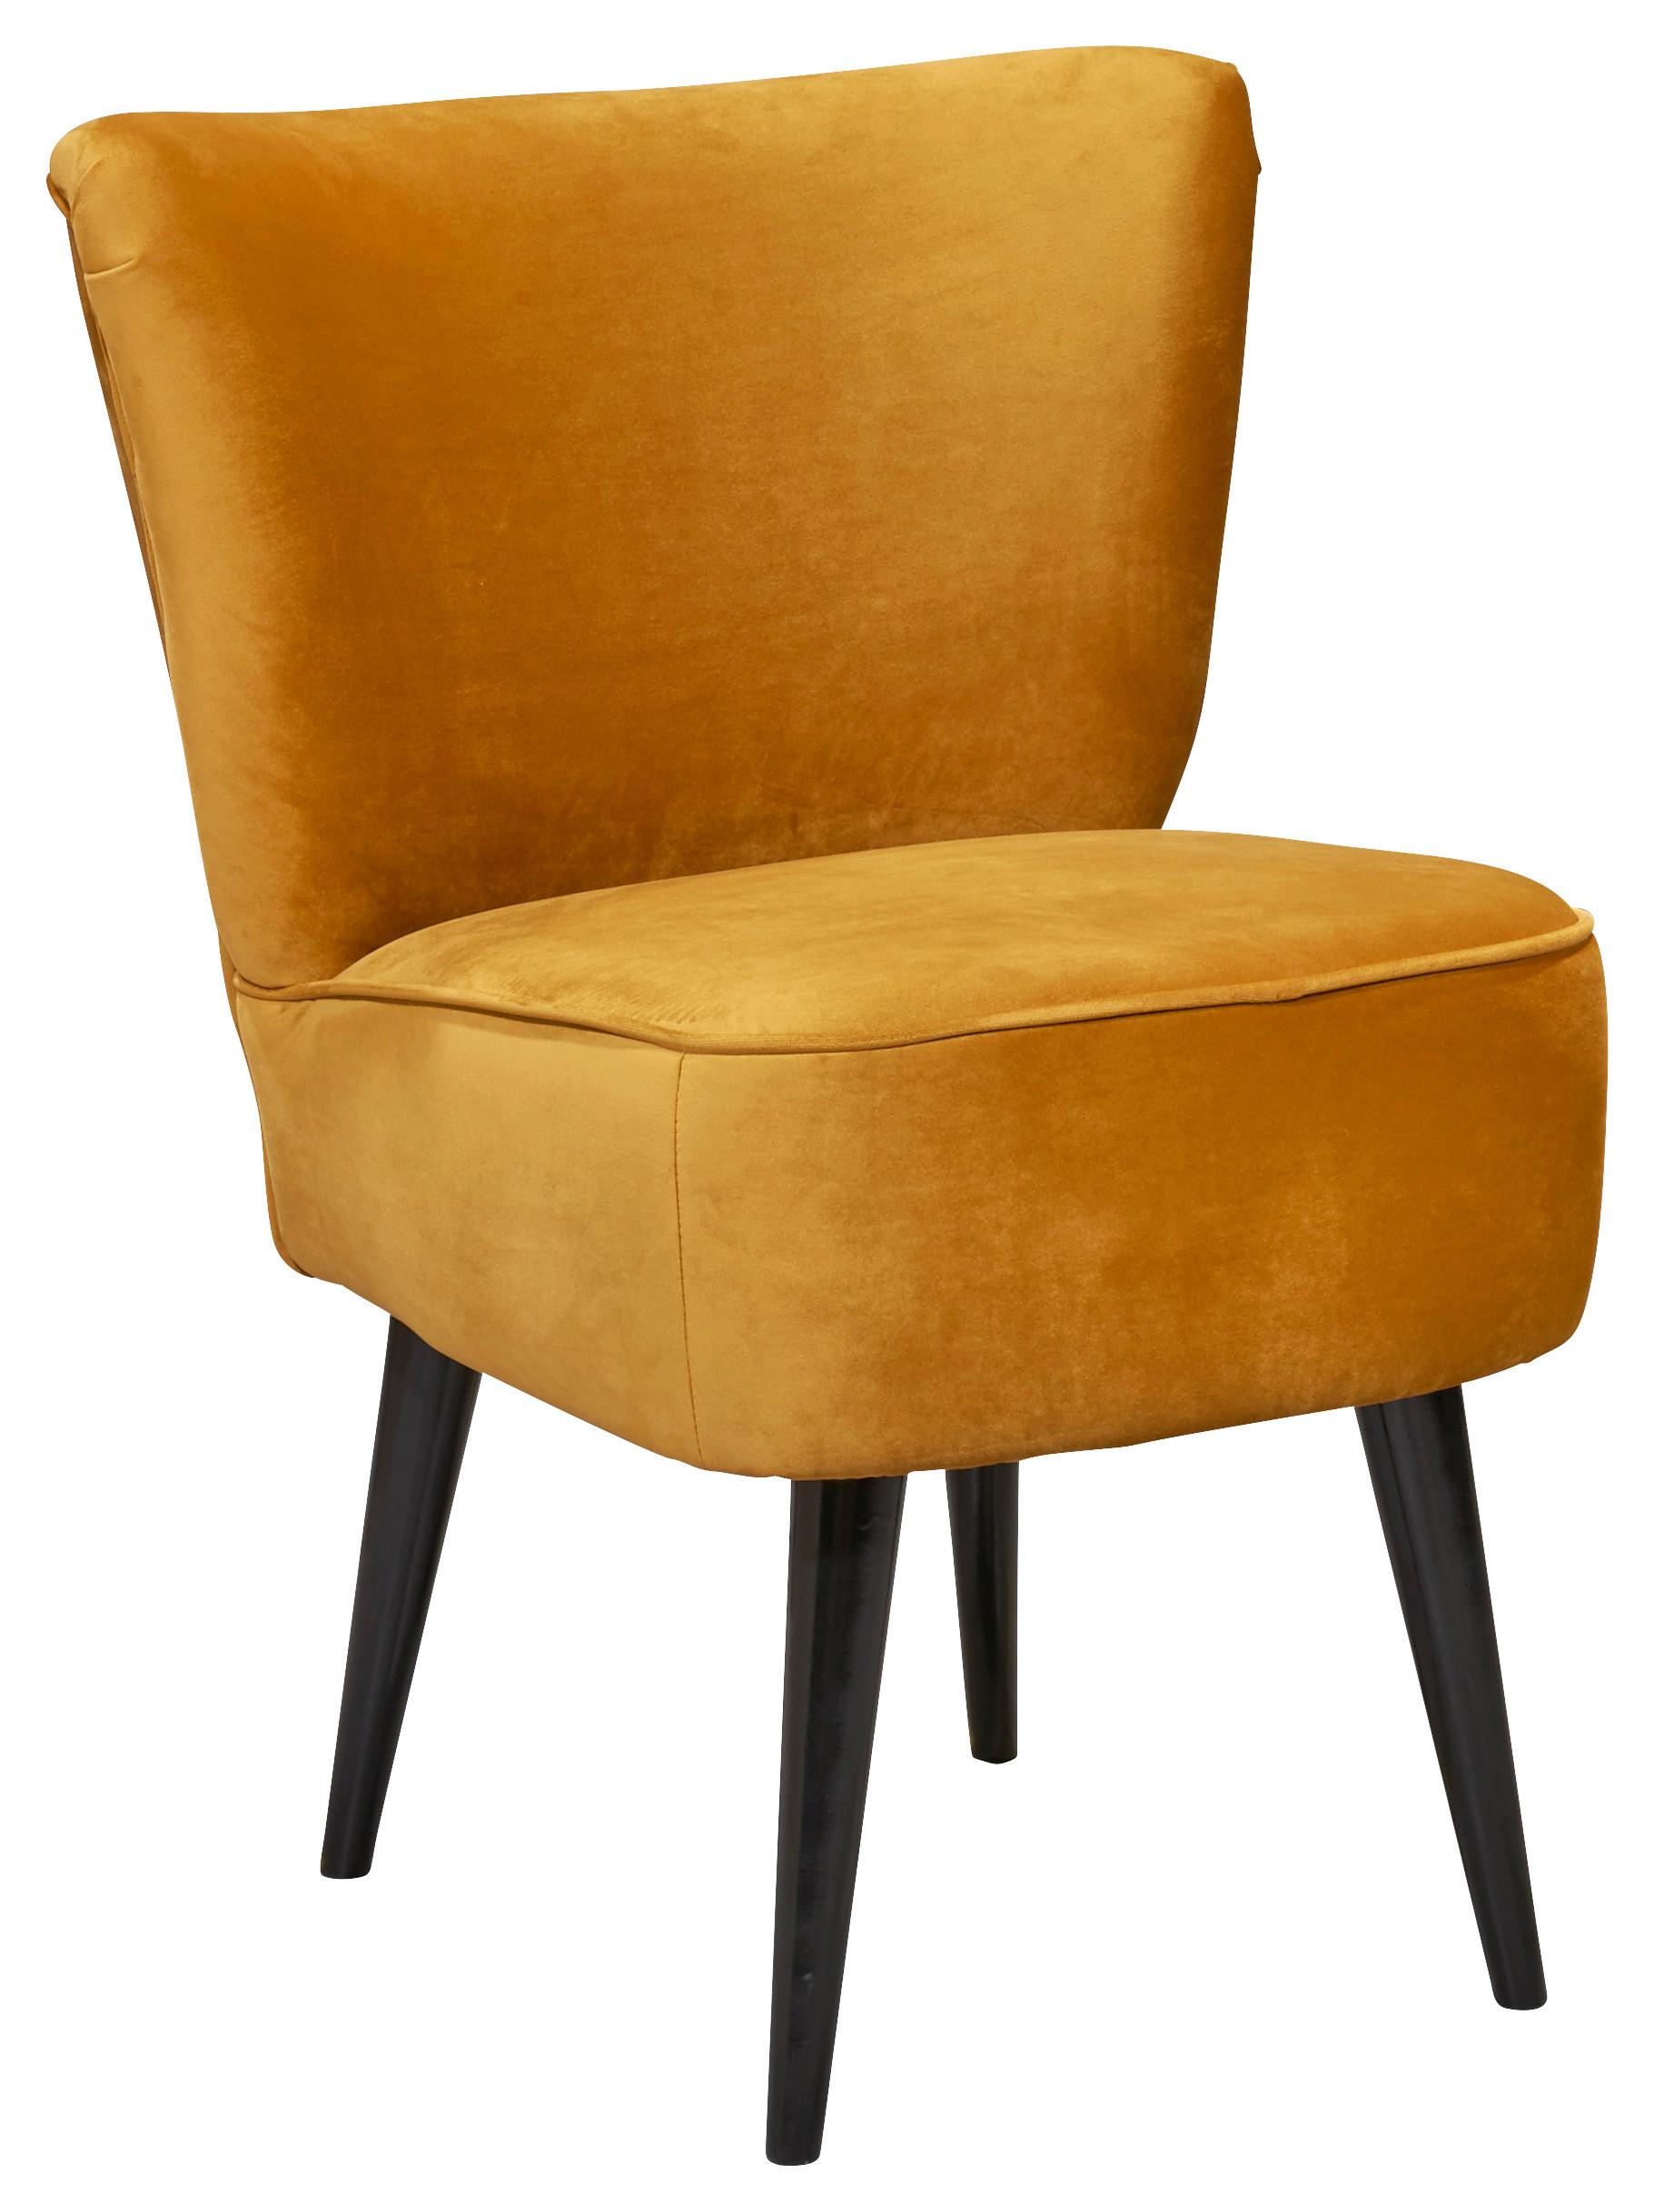 Fotelja Lord -Trend- - zlatne boje/crna, Trend, drvni materijal/tekstil (65/89/70cm) - MID.YOU